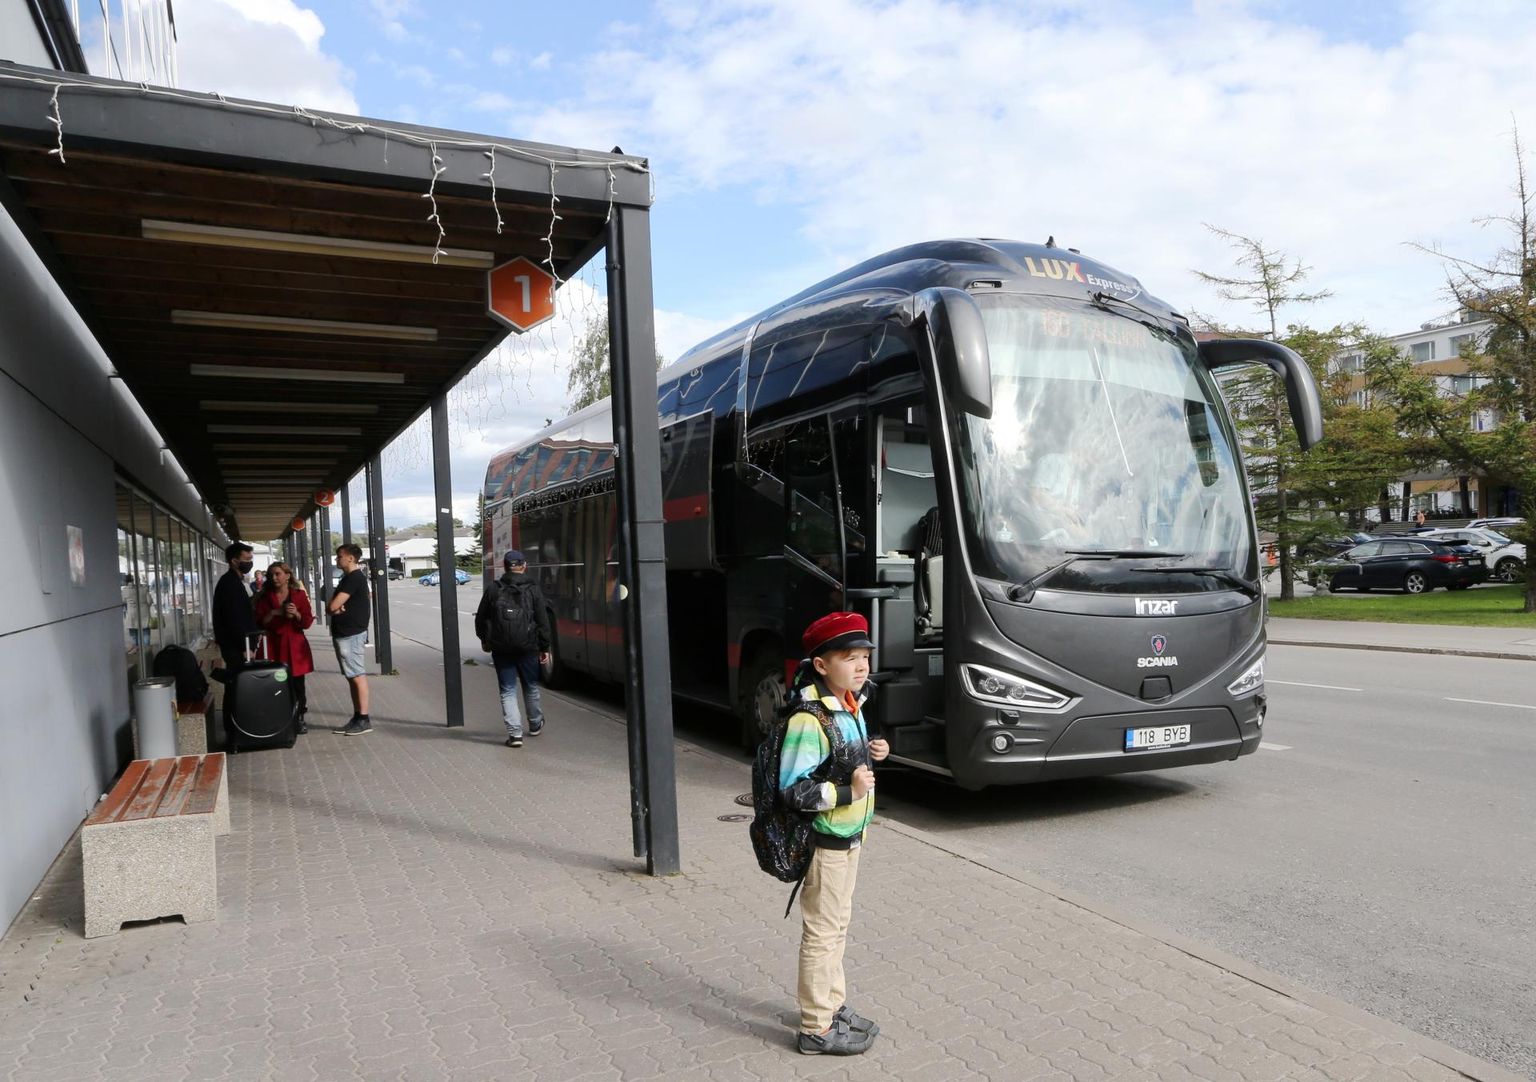 Rahvusvahelistel vedudel vähenes bussireisijate arv 96 protsenti. Pildil Eesti suurim rahvusvaheliste bussivedude korraldaja - Lux Express.
 